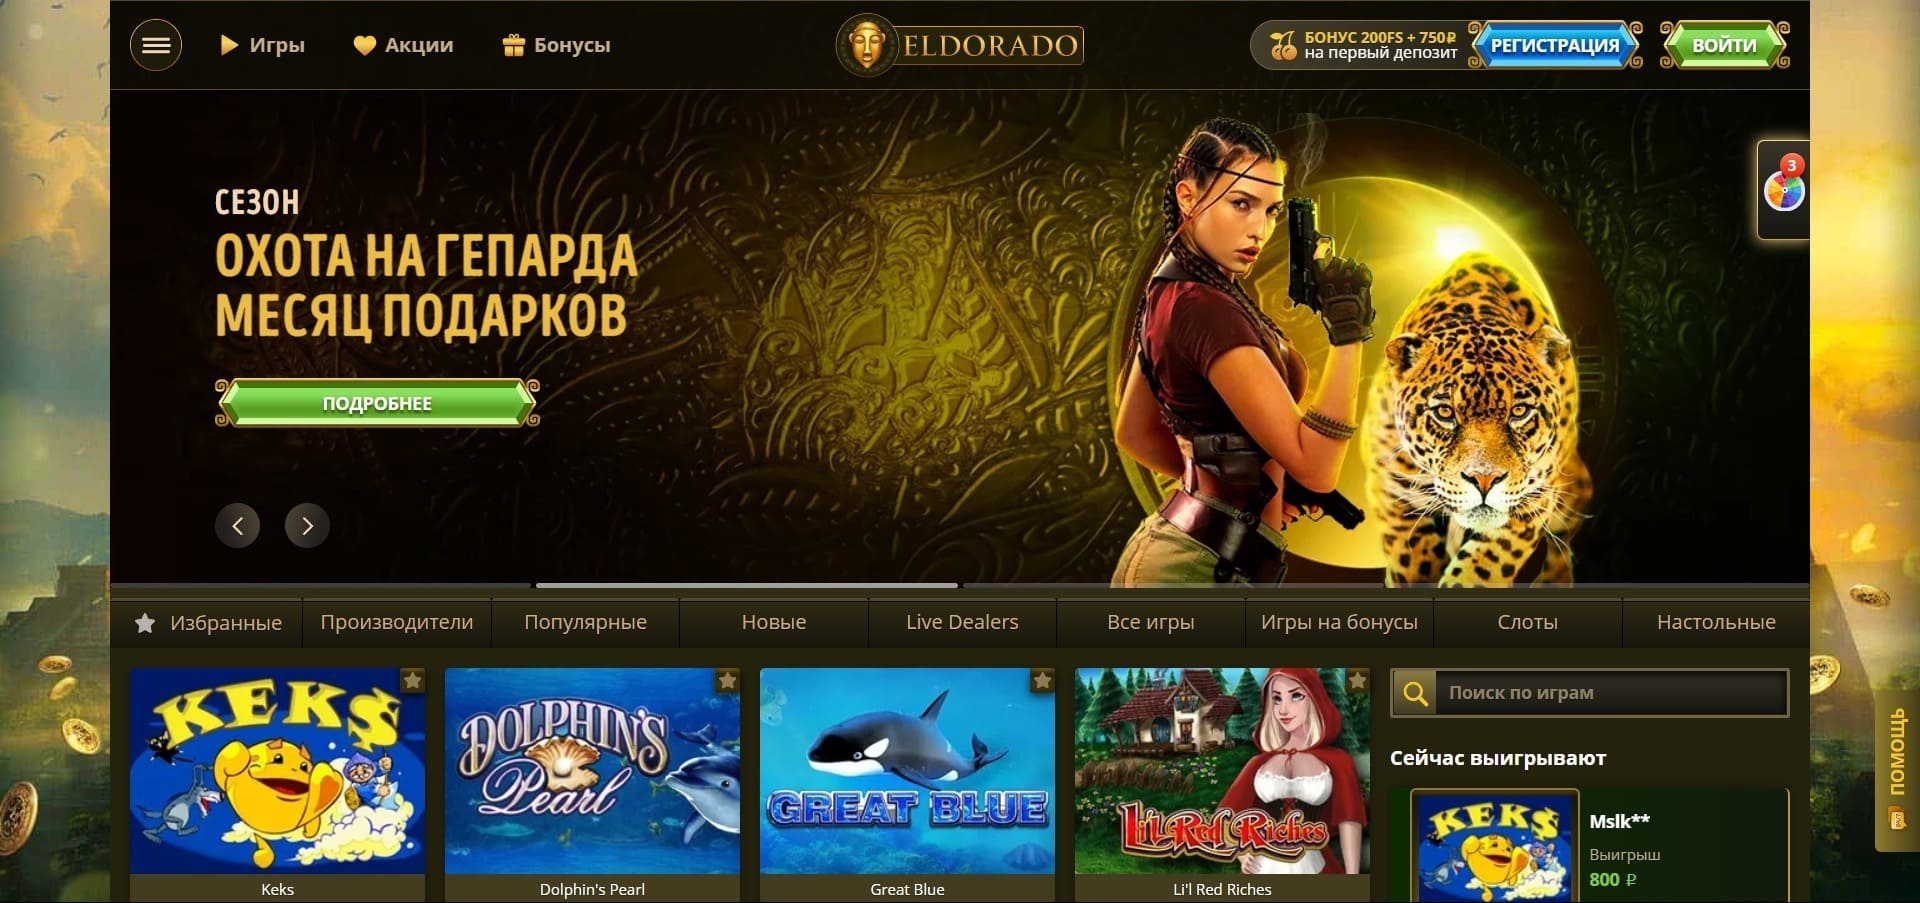 Official website of the Eldorado